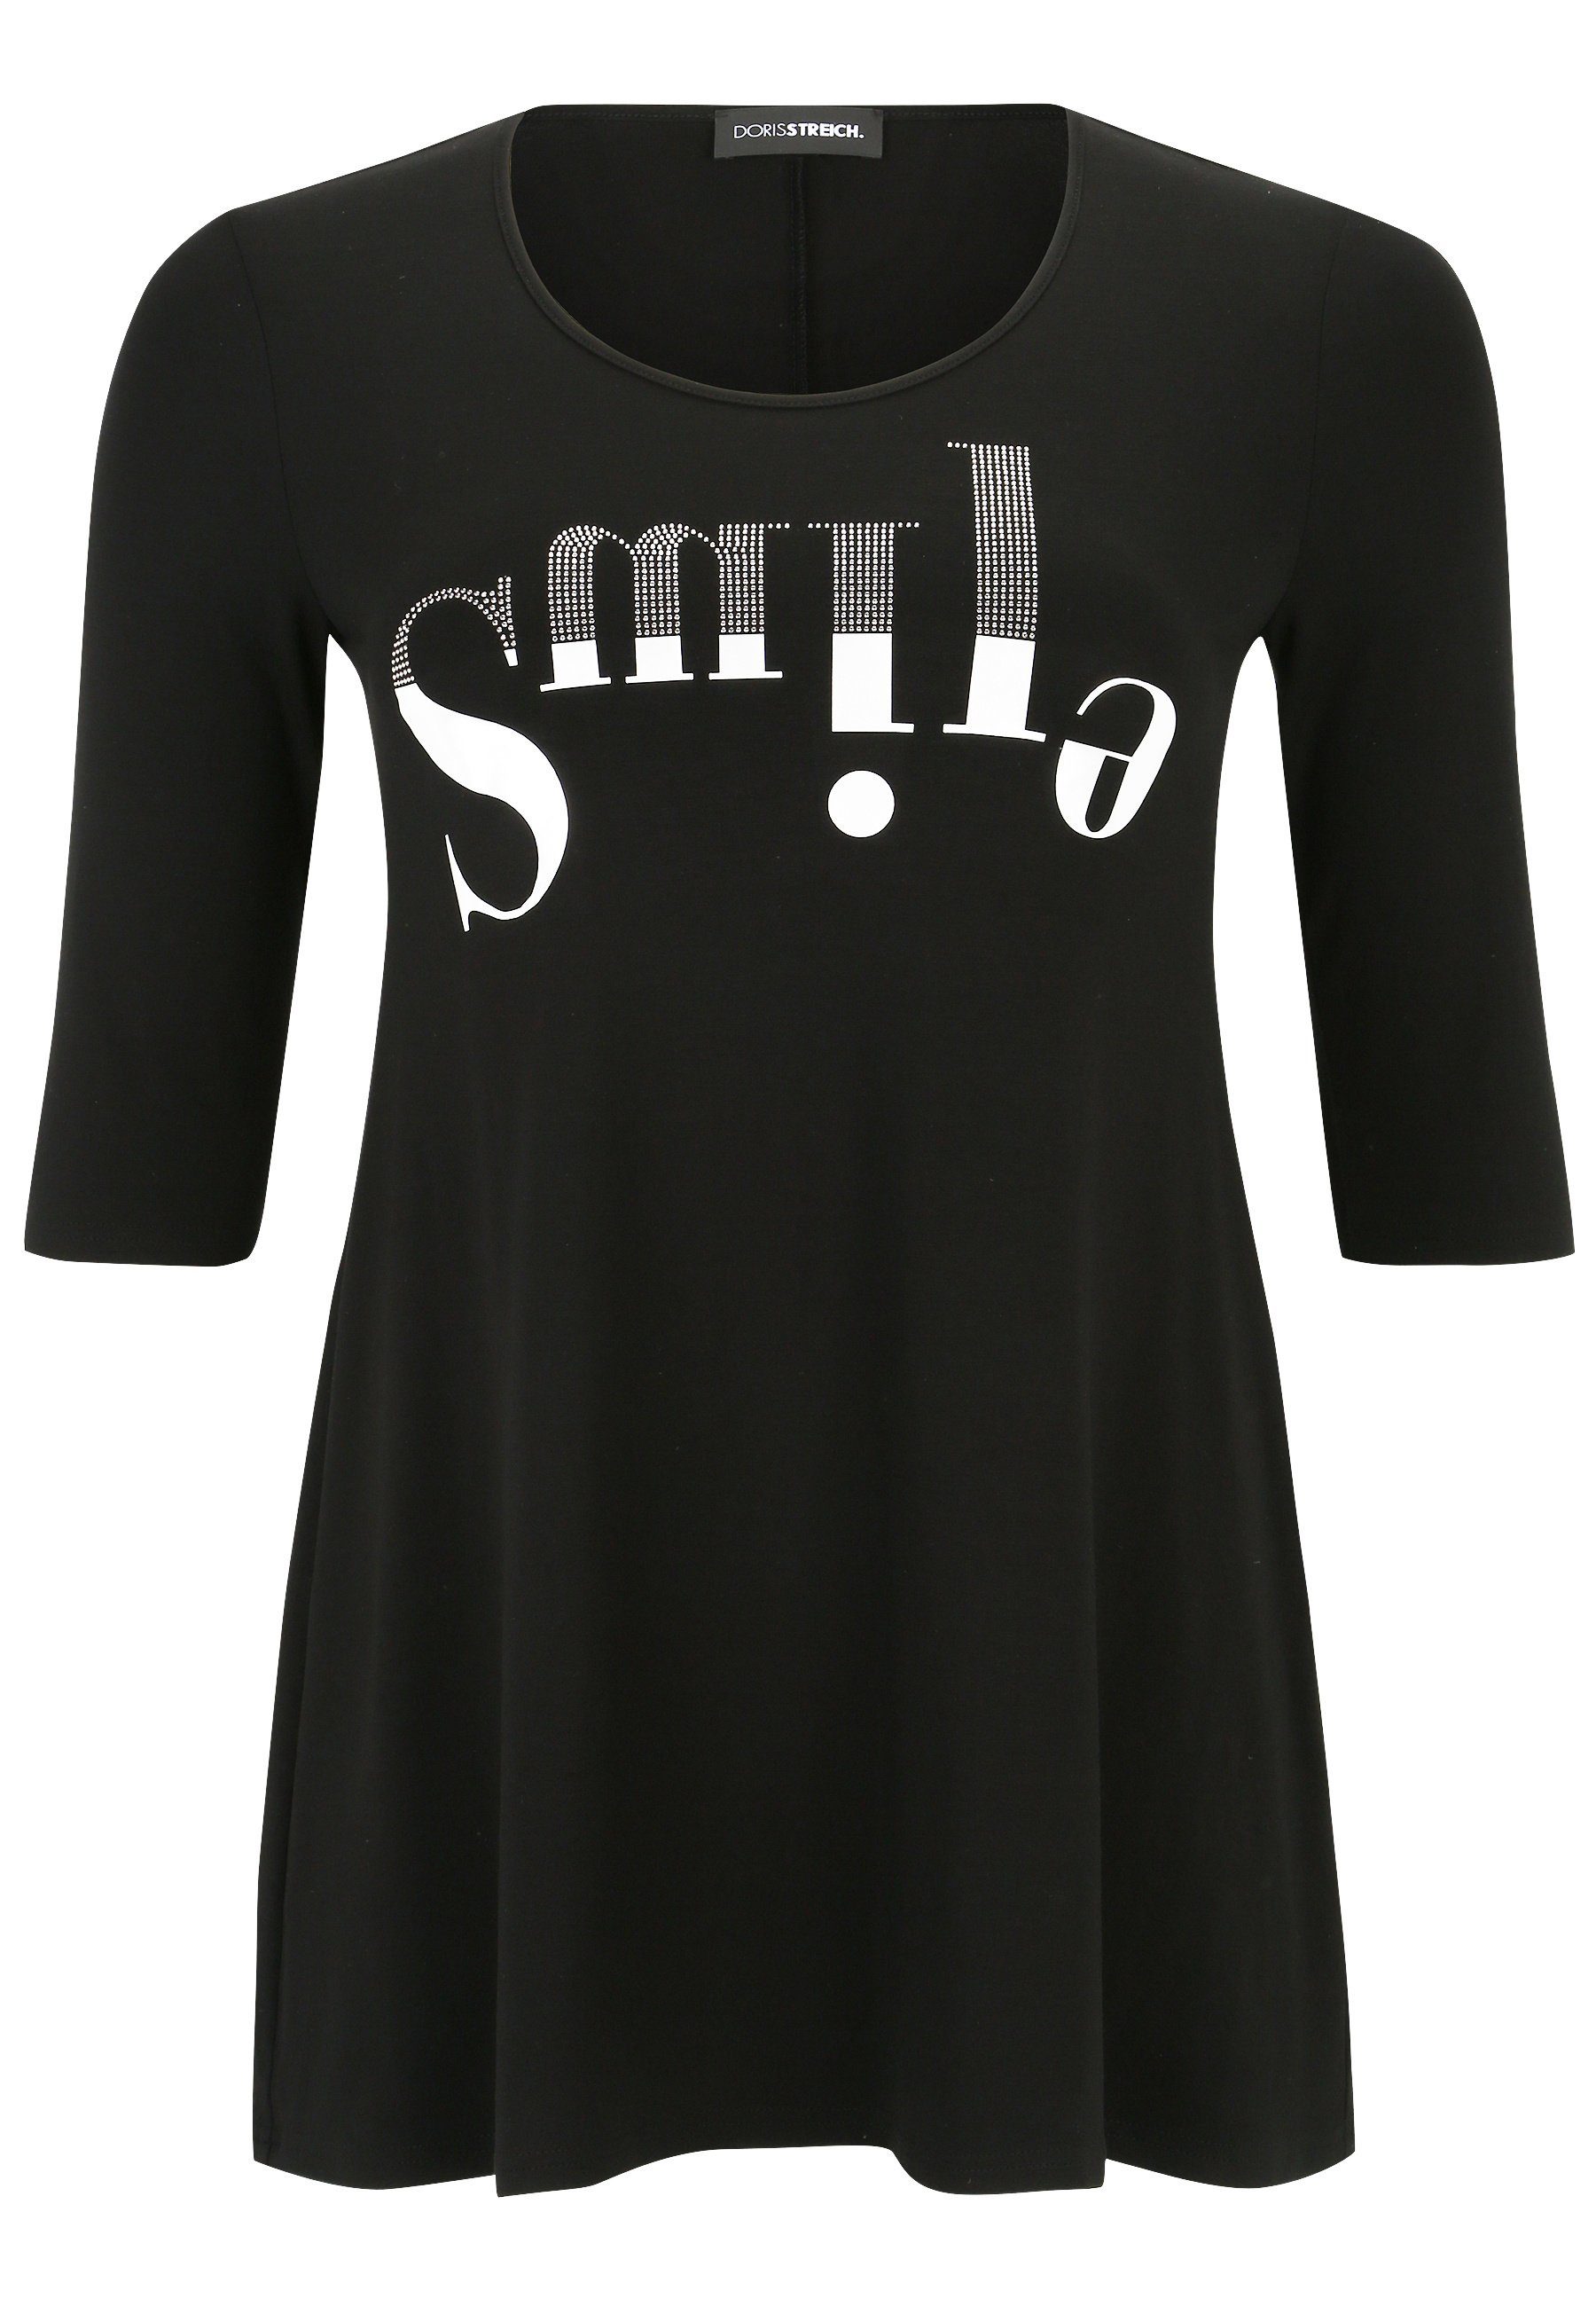 Doris Streich Tunika mit Strass-Steinchen, Longshirt aus softem elastischem  Material | Klassische Tuniken